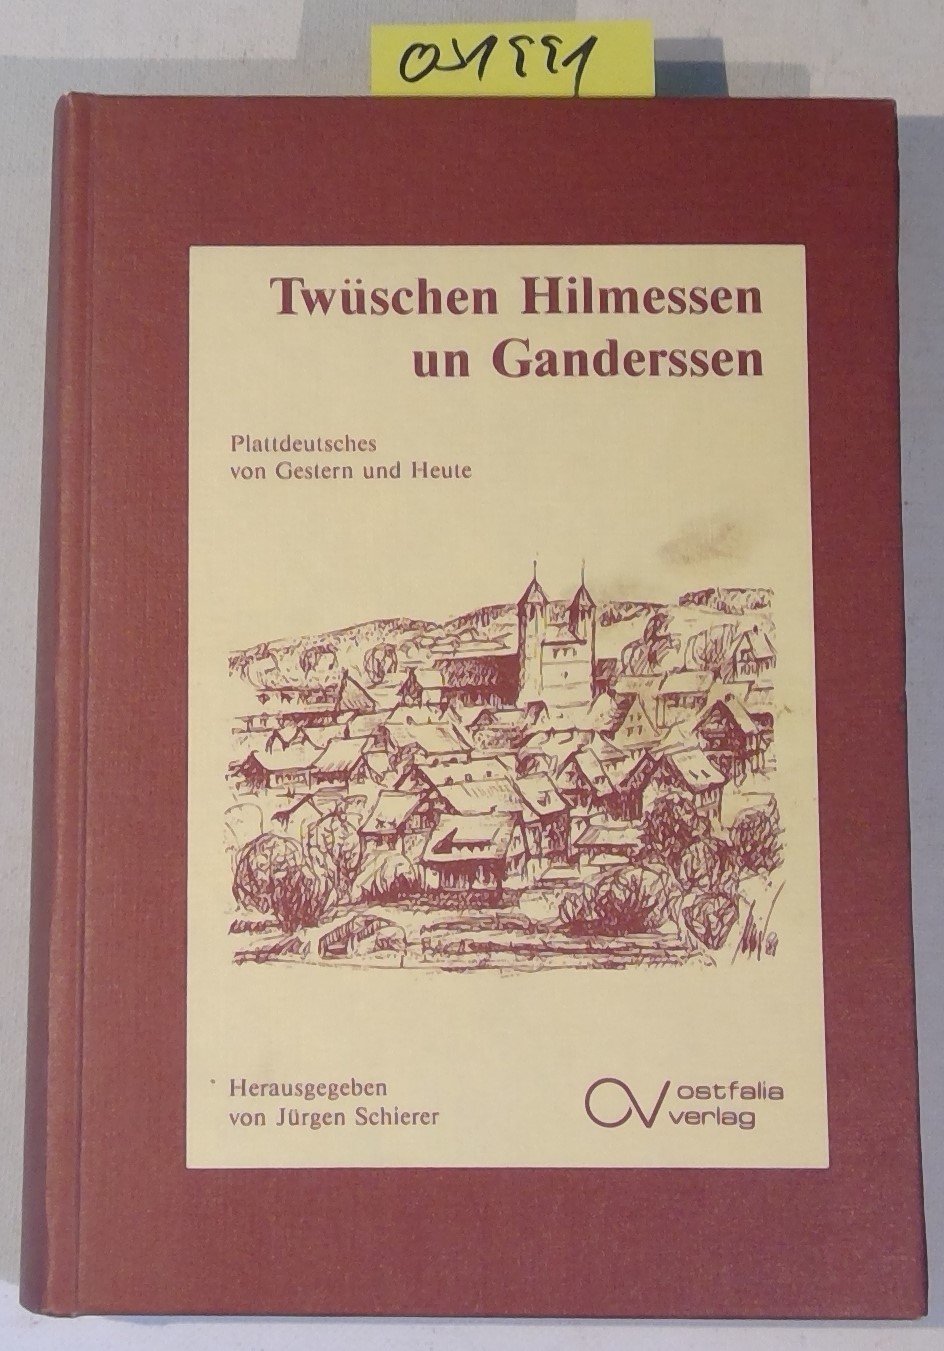 Twüschen Hilmessen un Ganderssen. Plattdeutsches aus Vergangenheit und Gegenwart. Ostfälisches Platt 3. Band - Schierer, Jürgen - Herausgeber